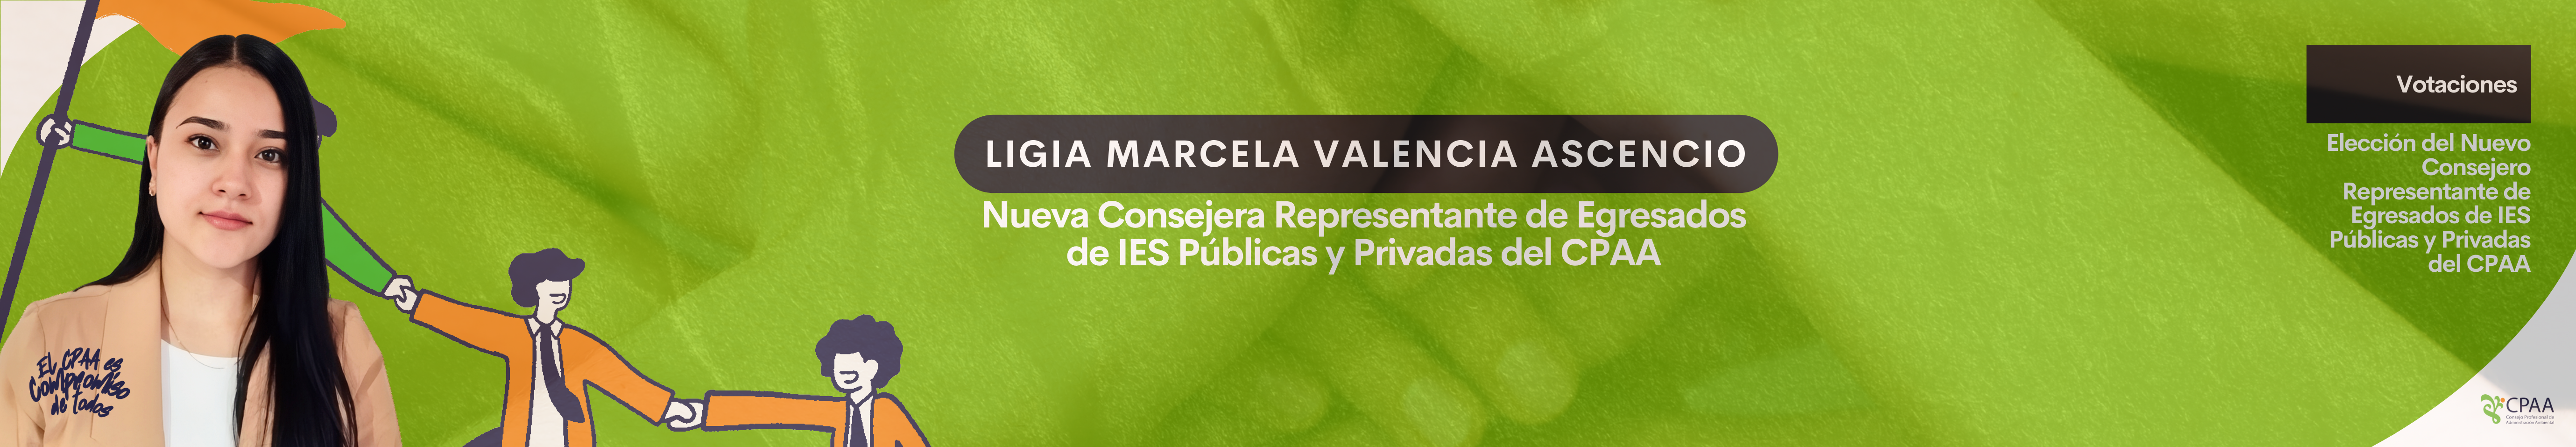 Copia de LIGIA MARCELA VALENCIA ASCENCIO - Nueva Consejera Representante de Egresados de IES Públicas y Privadas del CPAA (1)